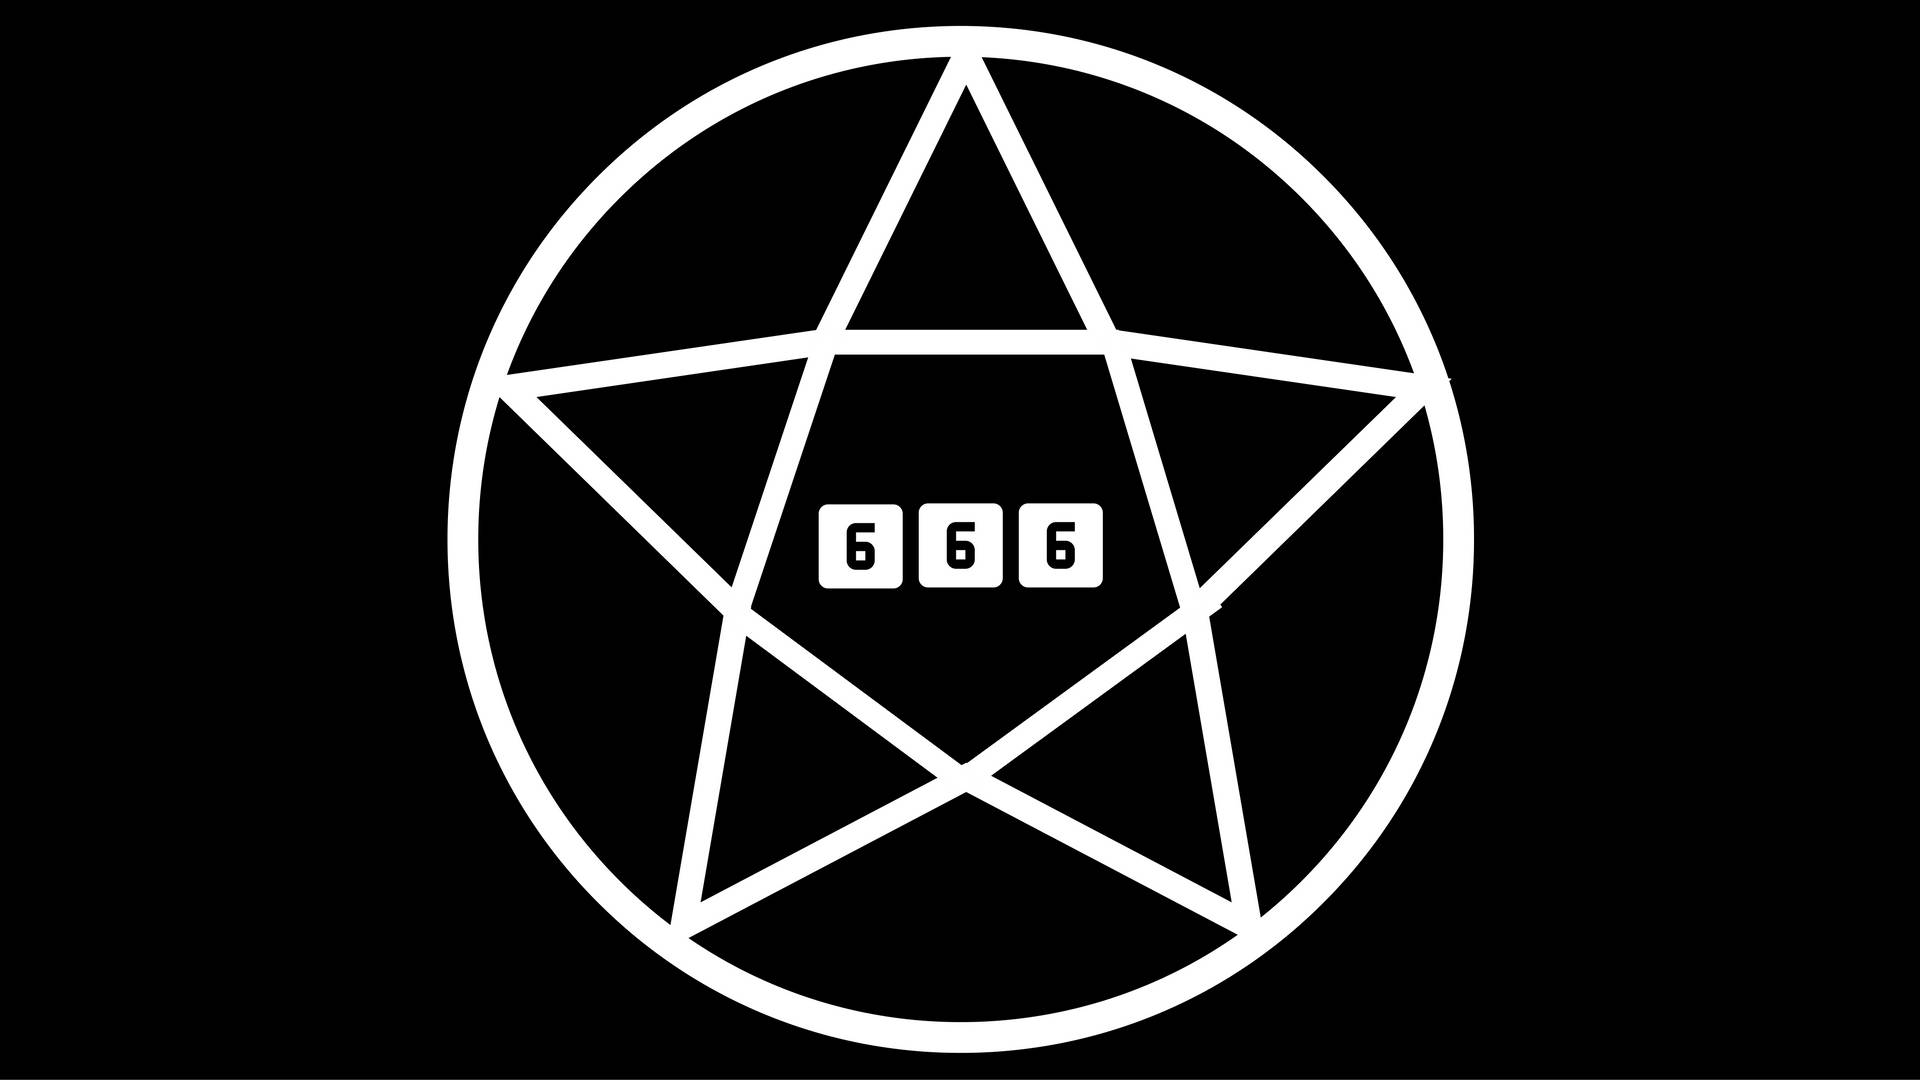 Minimalist 666 Pentagram